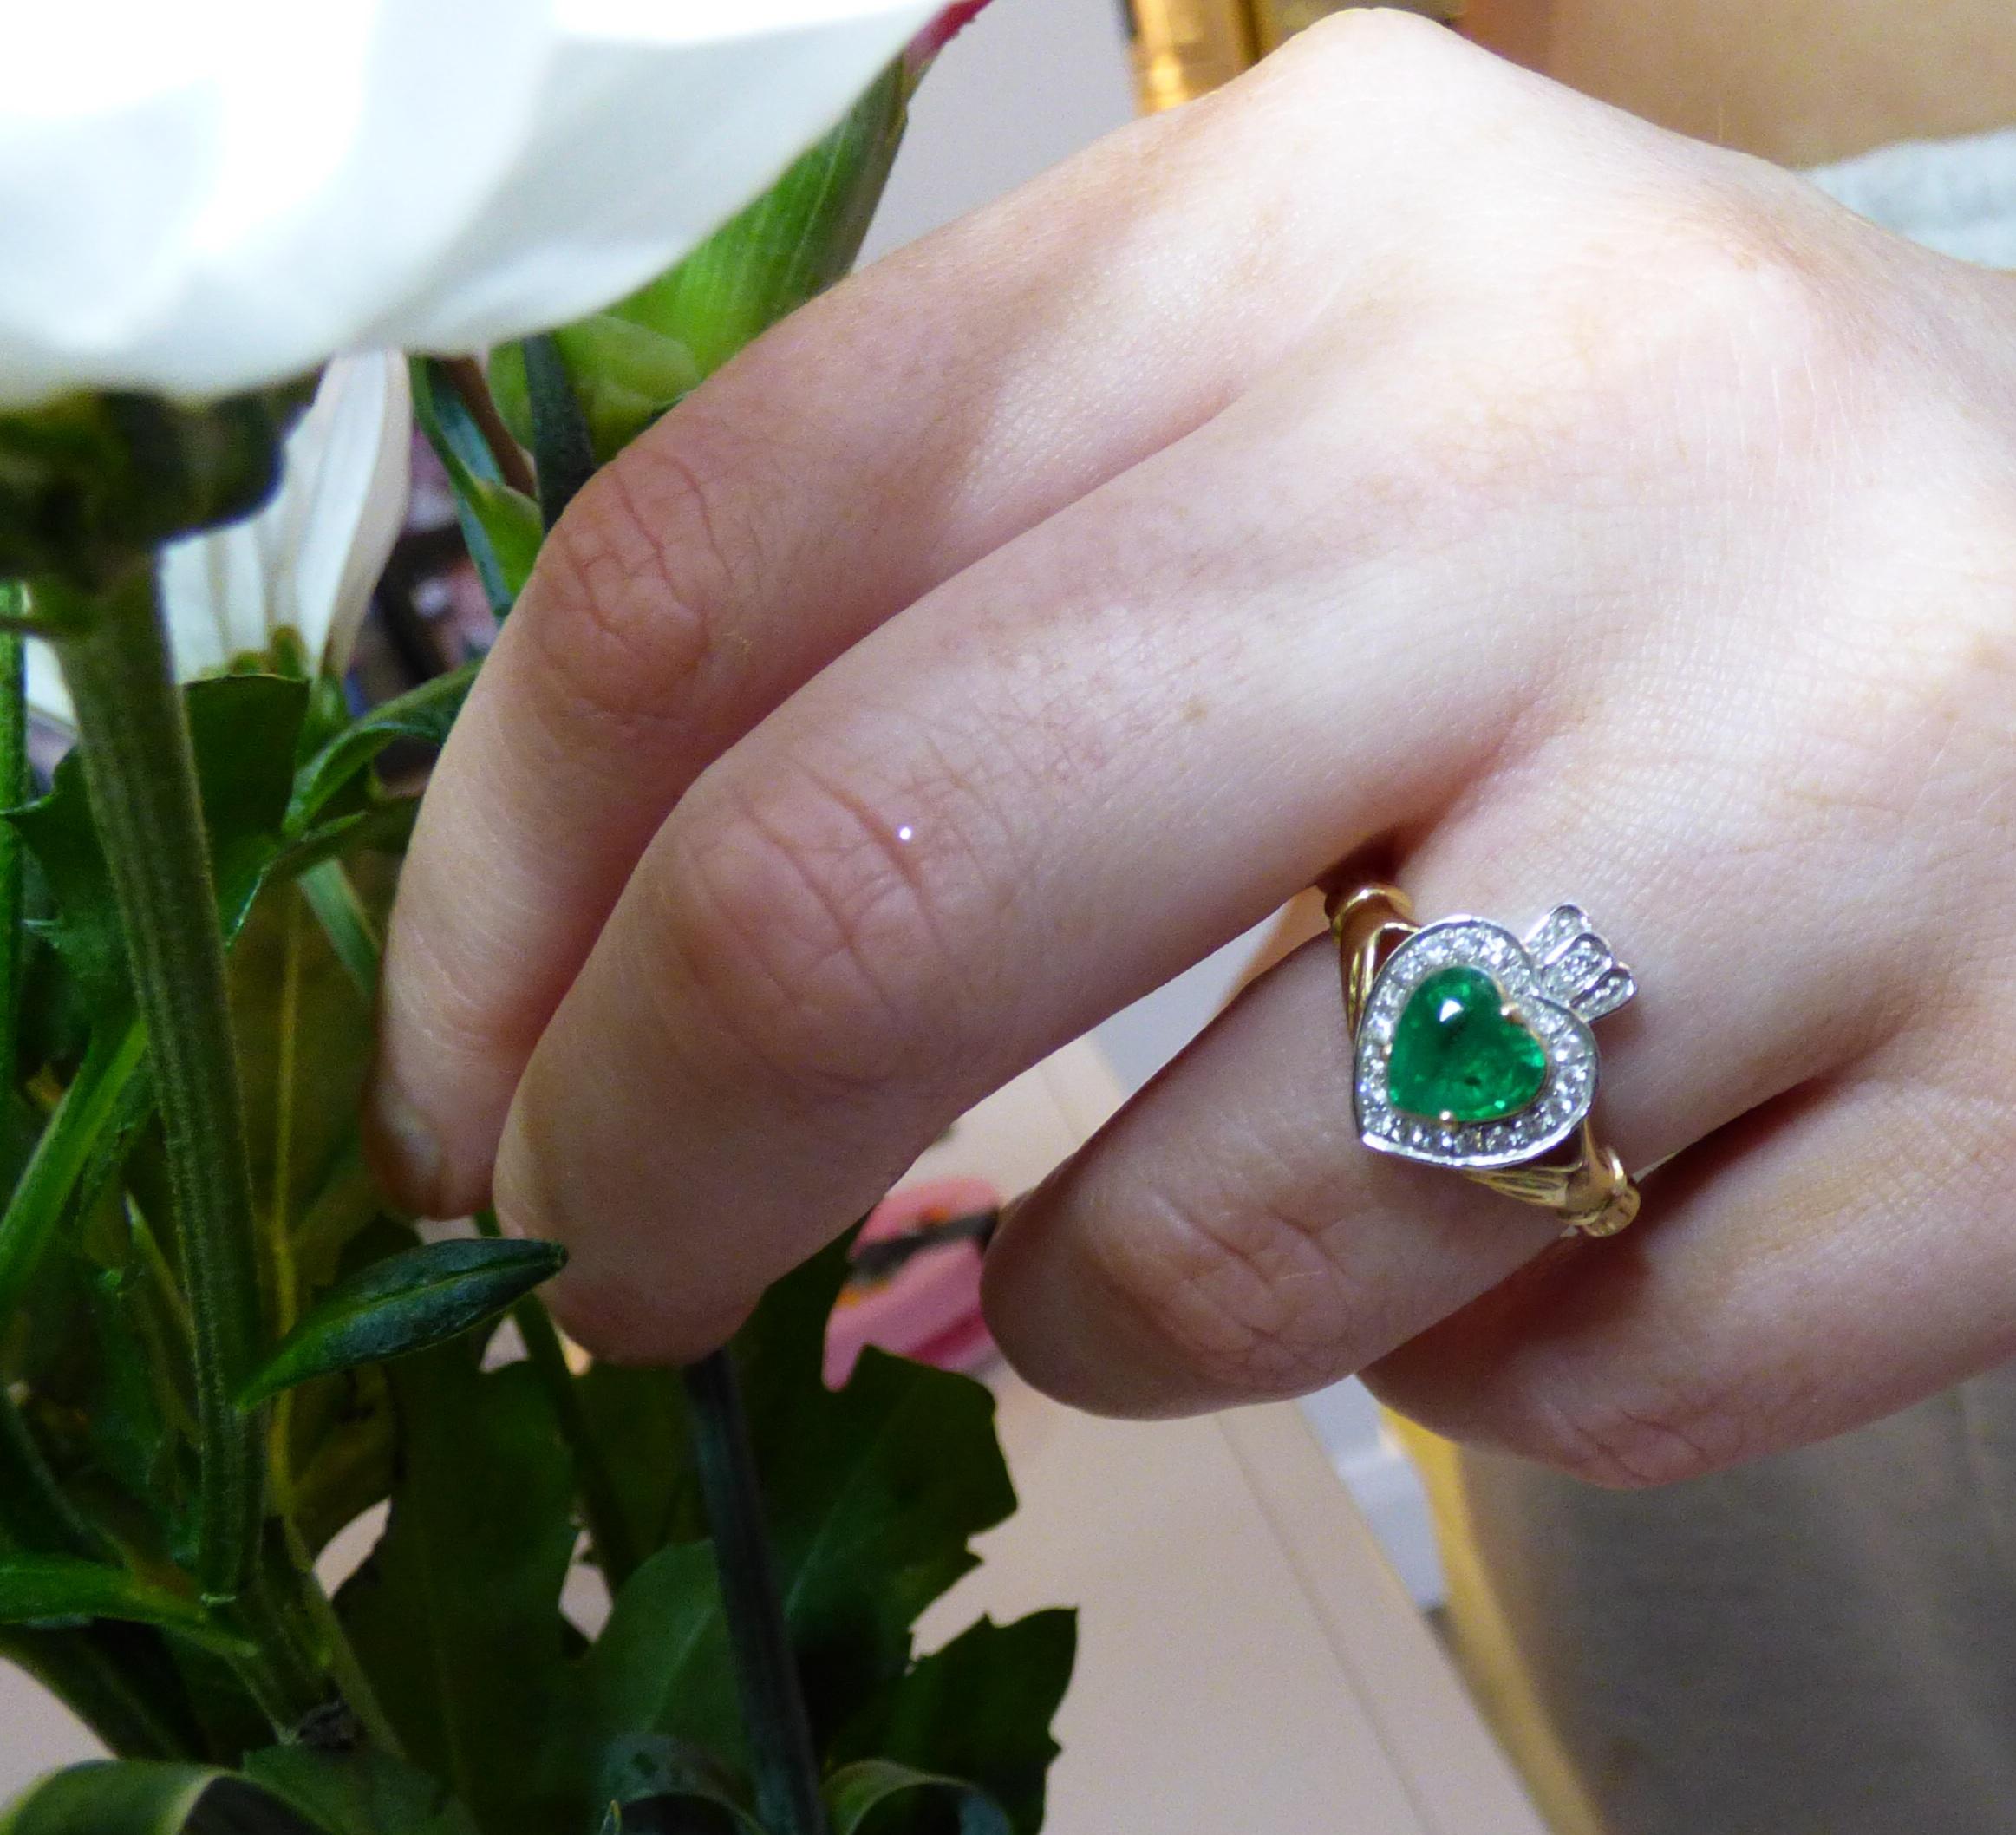 Eine irische Tradition: der Claddagh-Ring. Der Claddagh-Ring ist ein traditionelles irisches Schmuckstück, das Hunderte von Jahren alt ist. Das Design besteht aus zwei verschränkten Händen, die für Freundschaft stehen, einem Herz in der Mitte, das